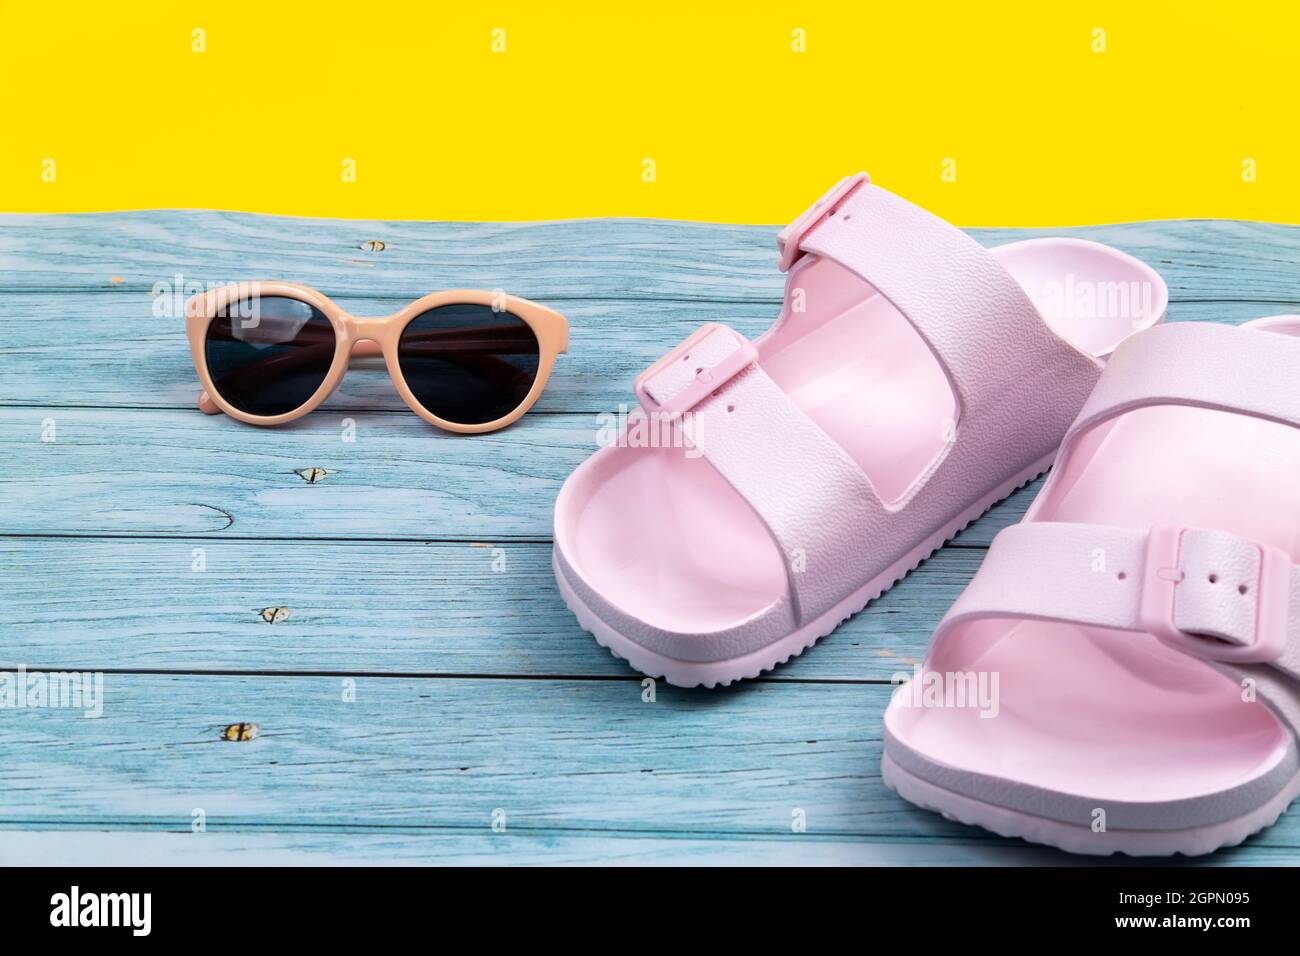 Le sneaker e gli occhiali estivi sono su uno sfondo isolato misto blu e giallo. Foto Stock